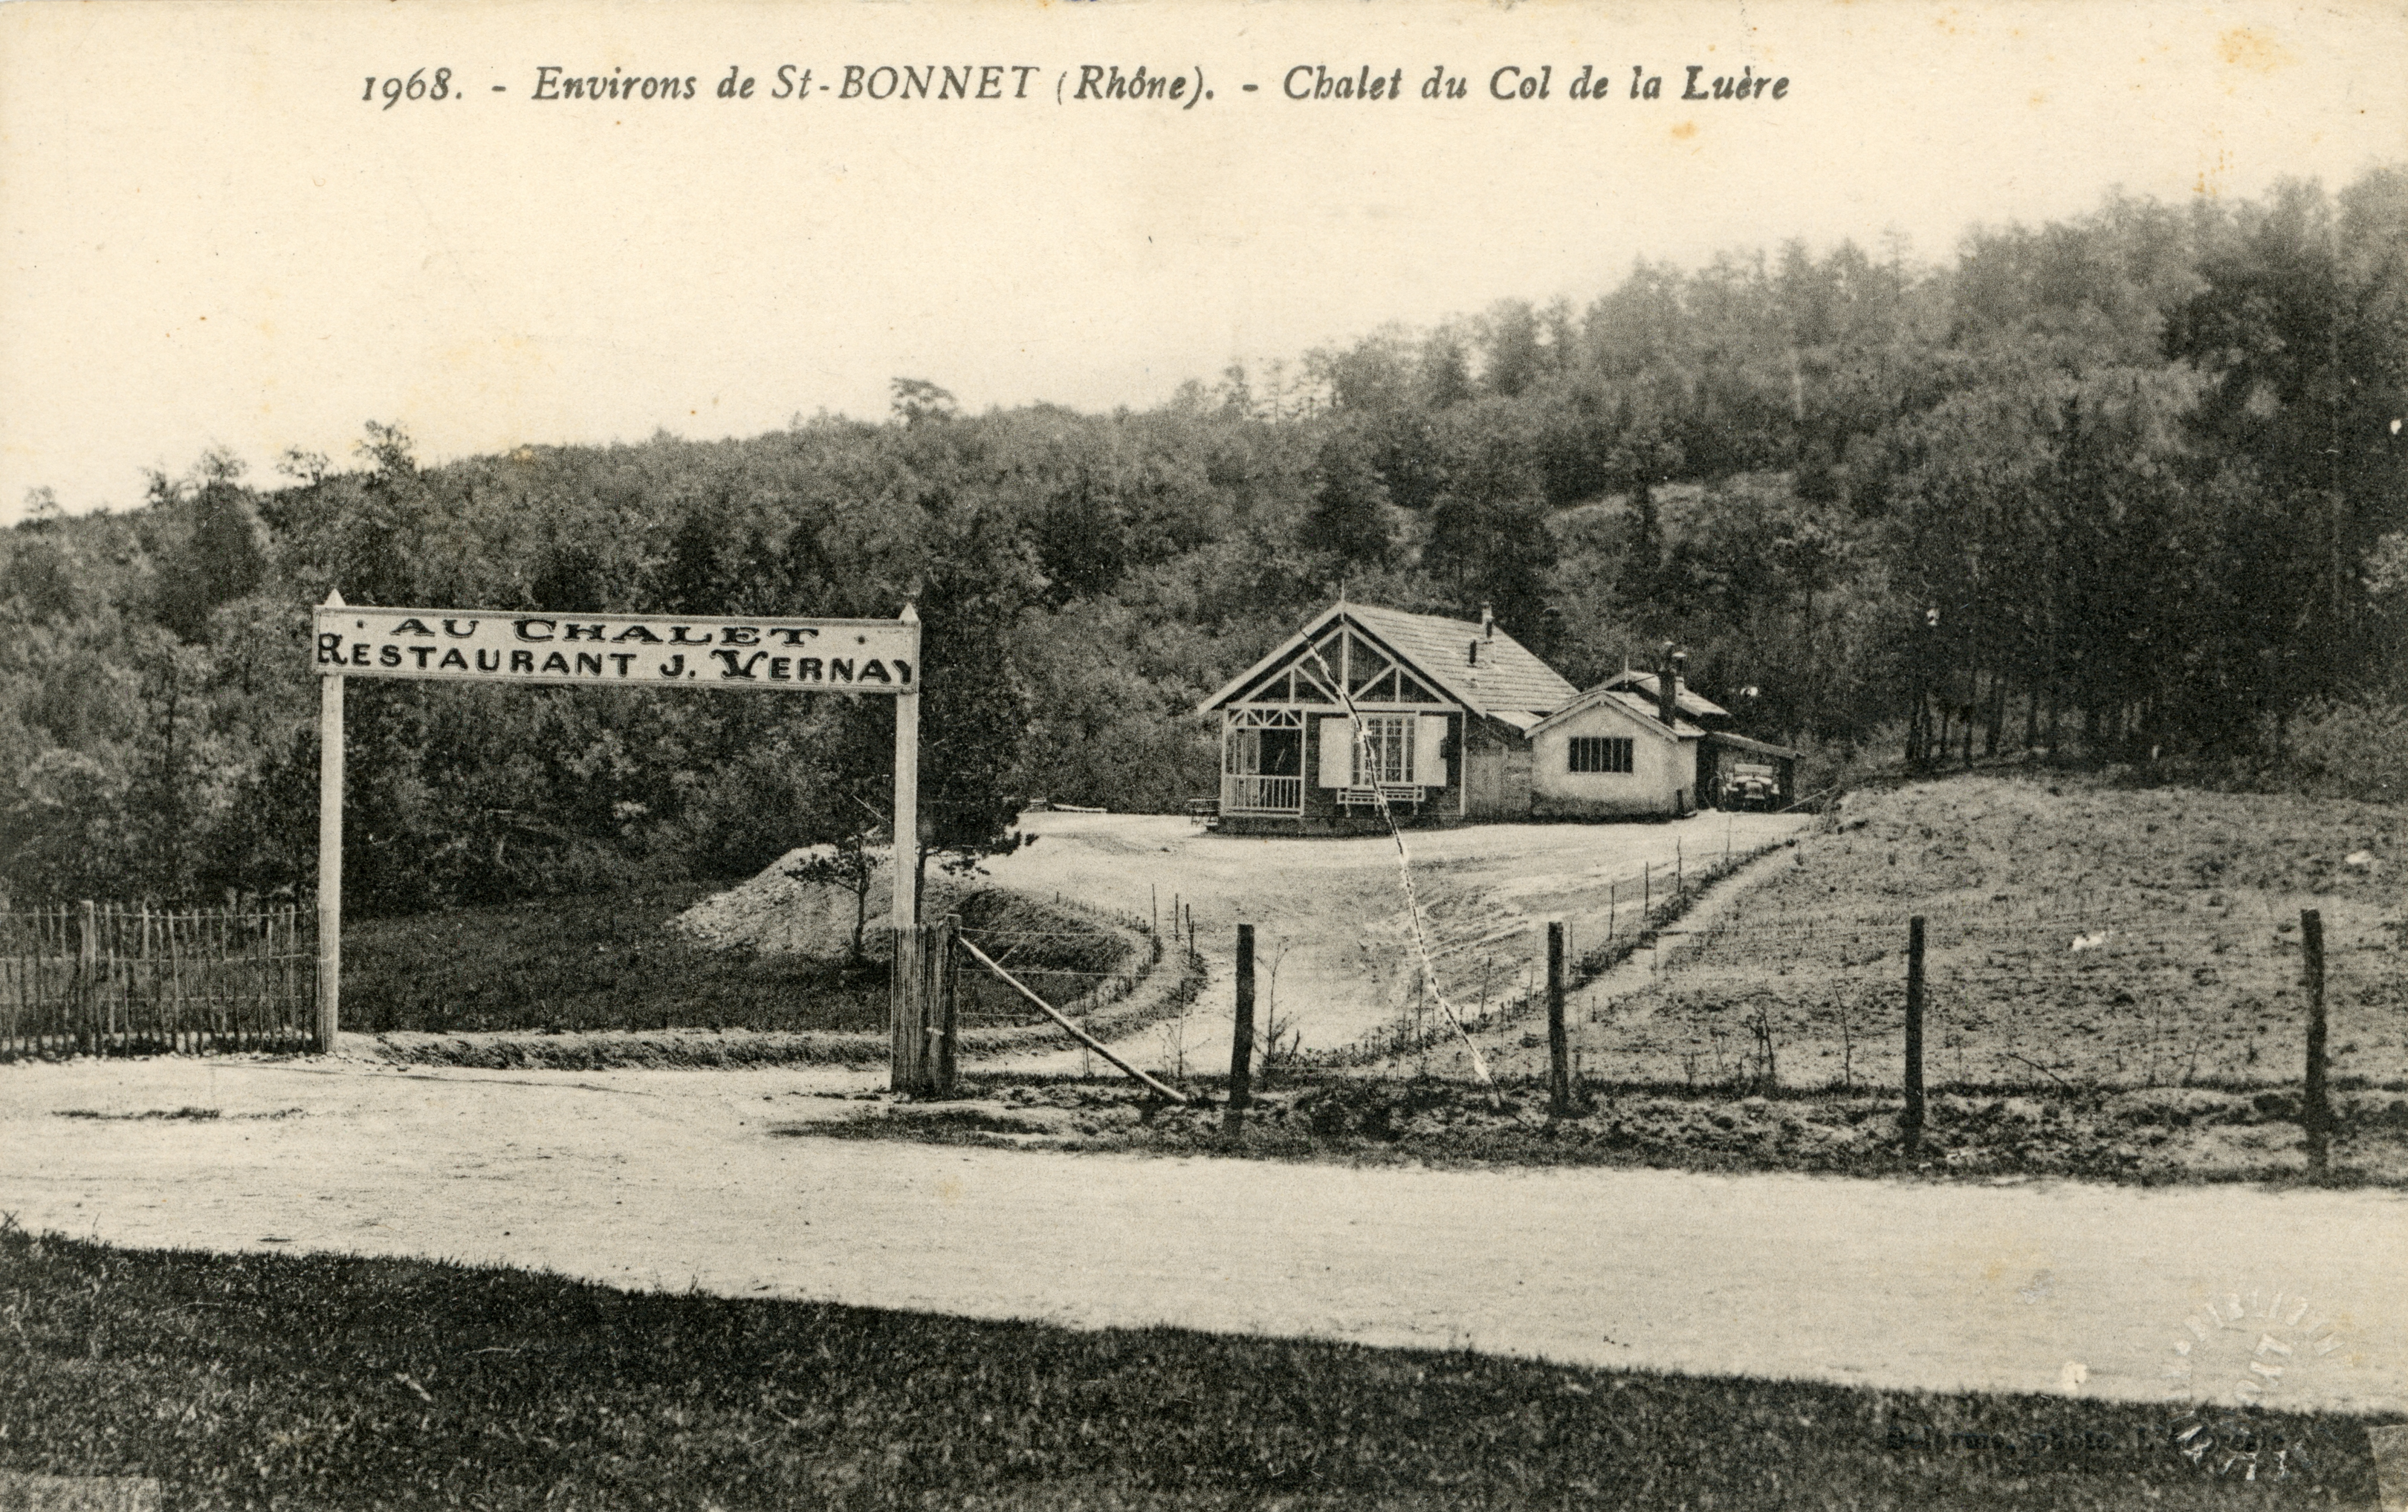 Photographes en Rhône-Alpes::Environ de St-Bonnet (Rhône). - Chalet du Col  de la Luère